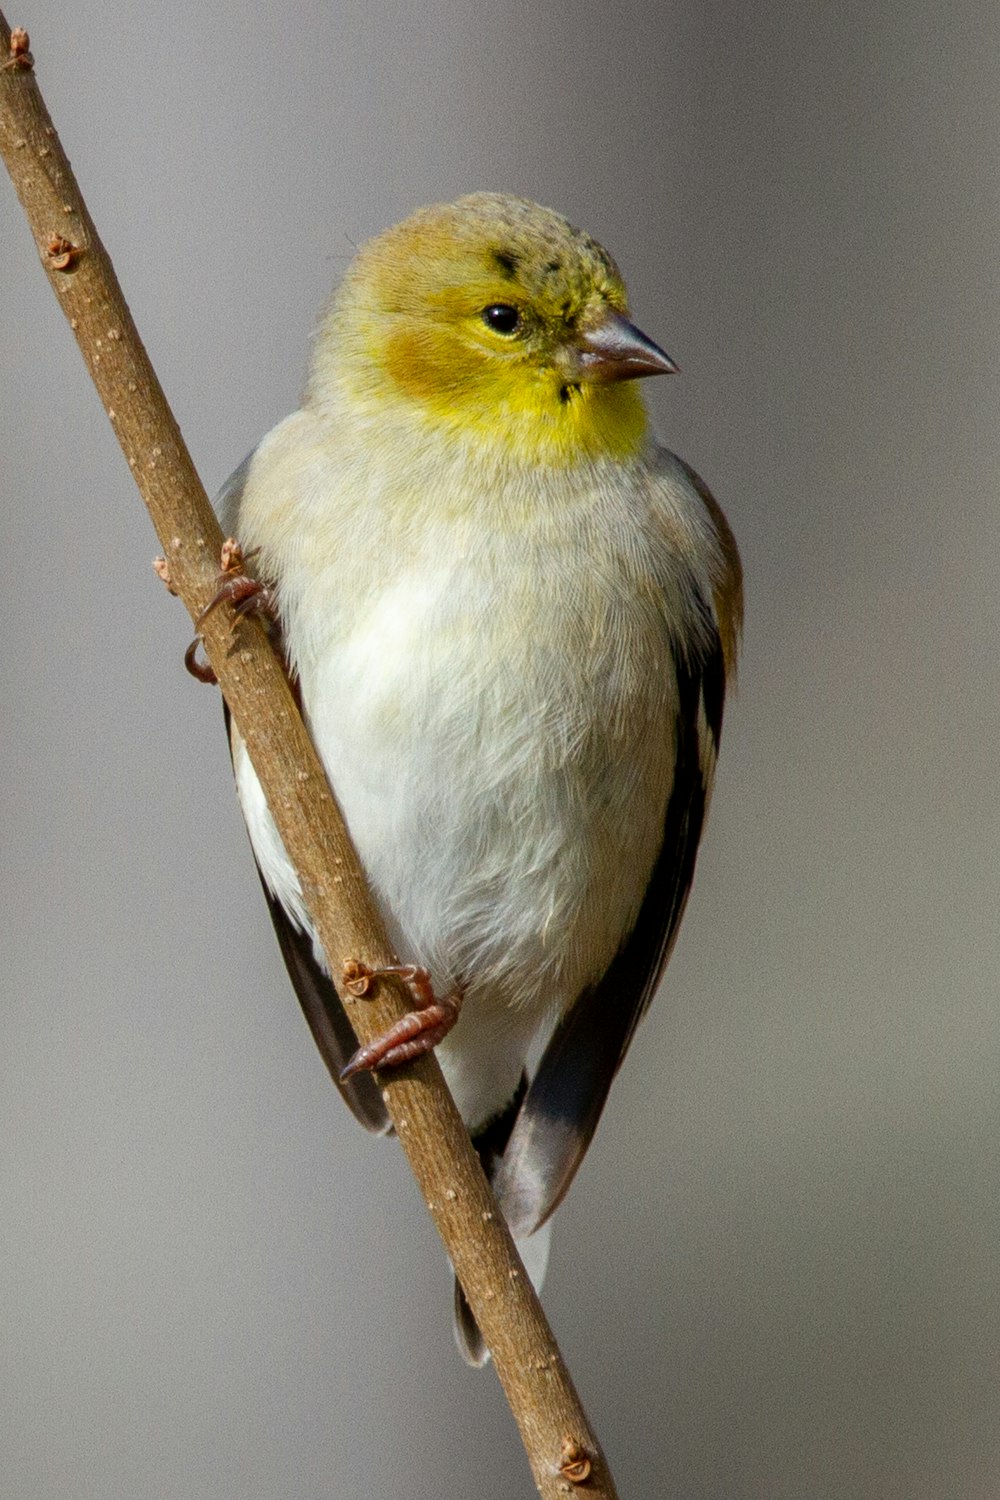 Un petit oiseau jaune et blanc perché sur une branche